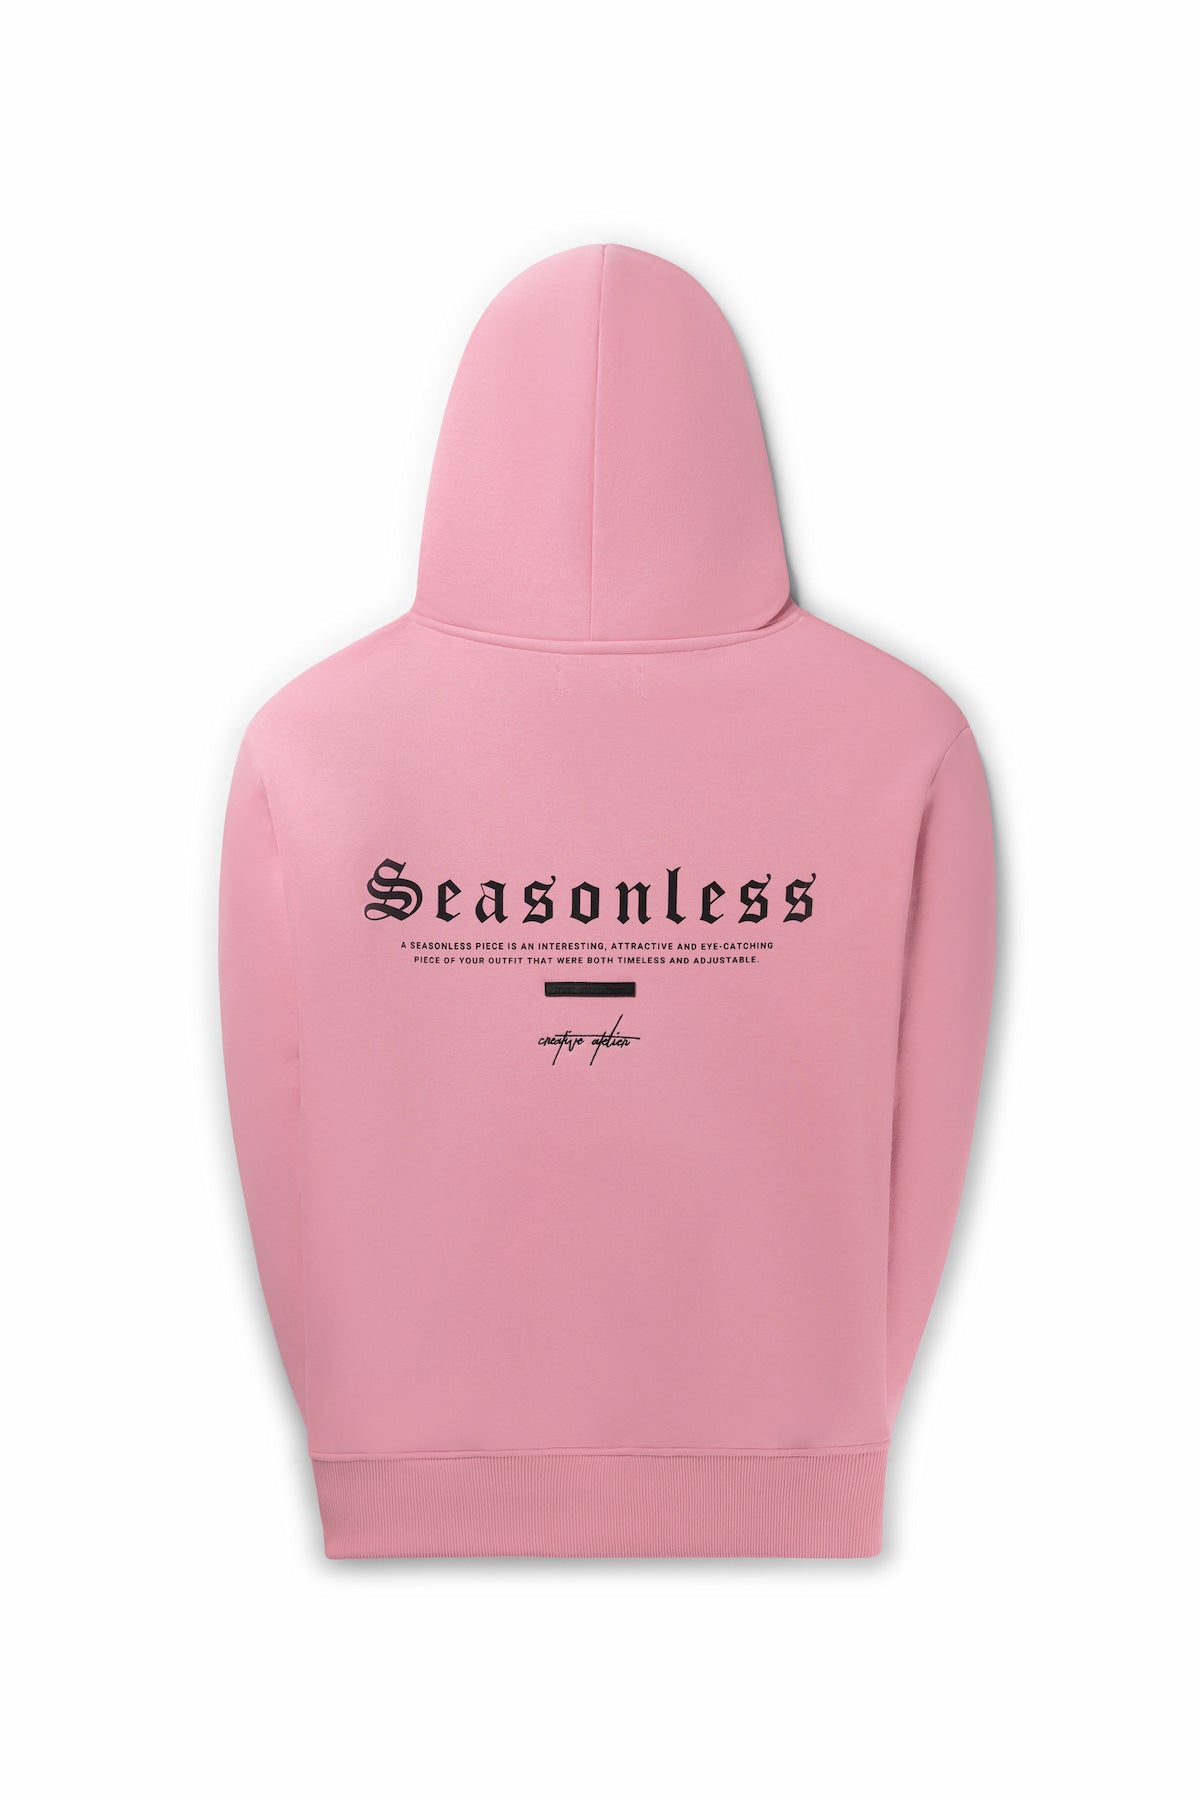 Seasonless Hoodie - Pink